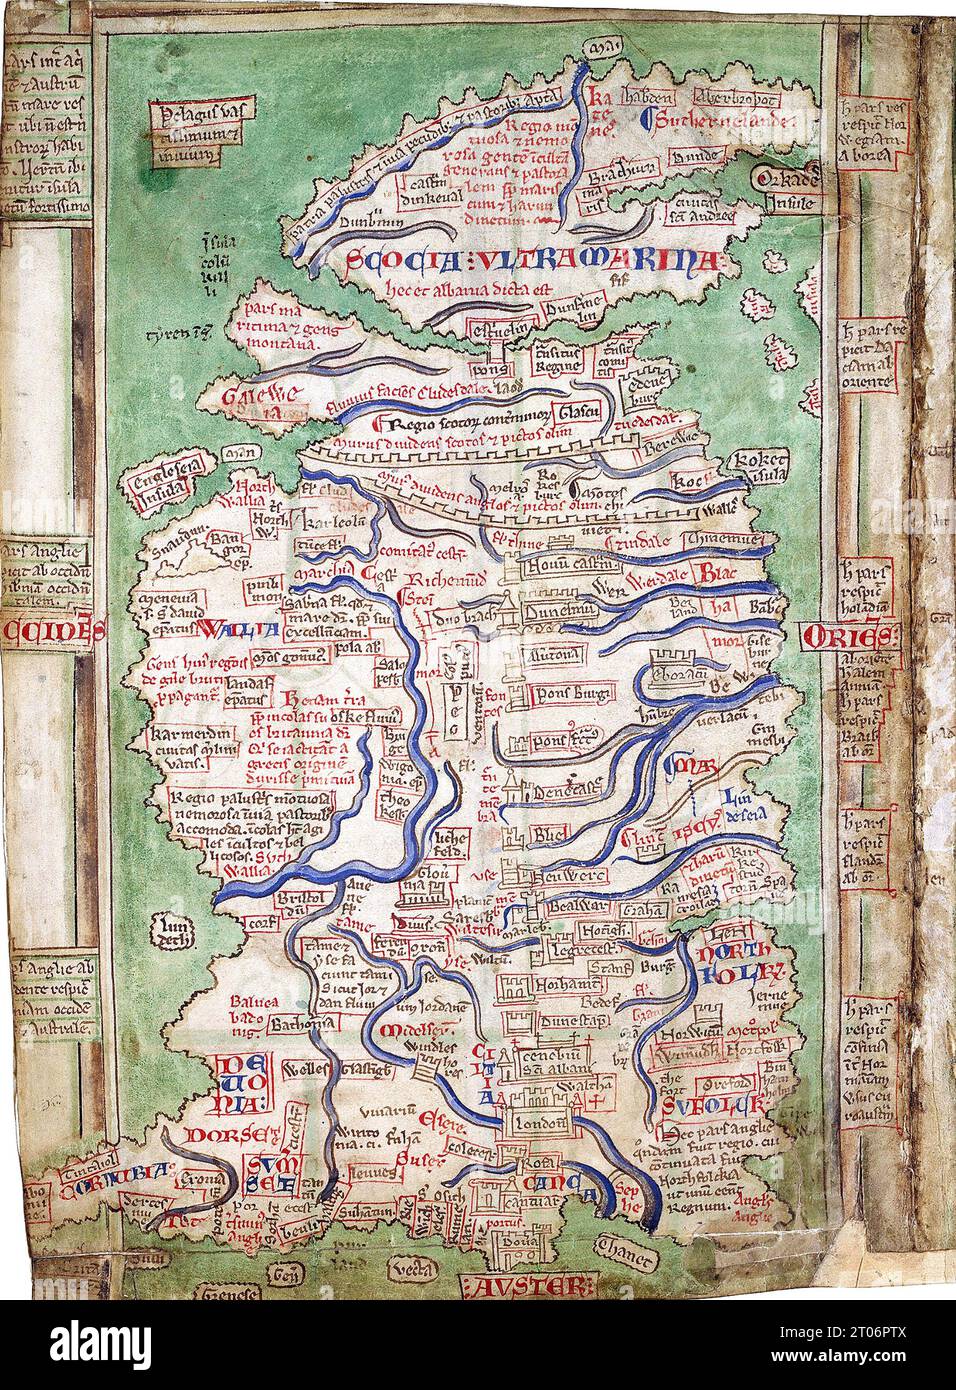 MATTHEW PARRIS (c 1200-1259) moine bénédictin anglais et chroniqueur. Une de ses cartes de la Grande-Bretagne avec le mur d'Hadrien et le mur d'Antoinine clairement montré. Banque D'Images